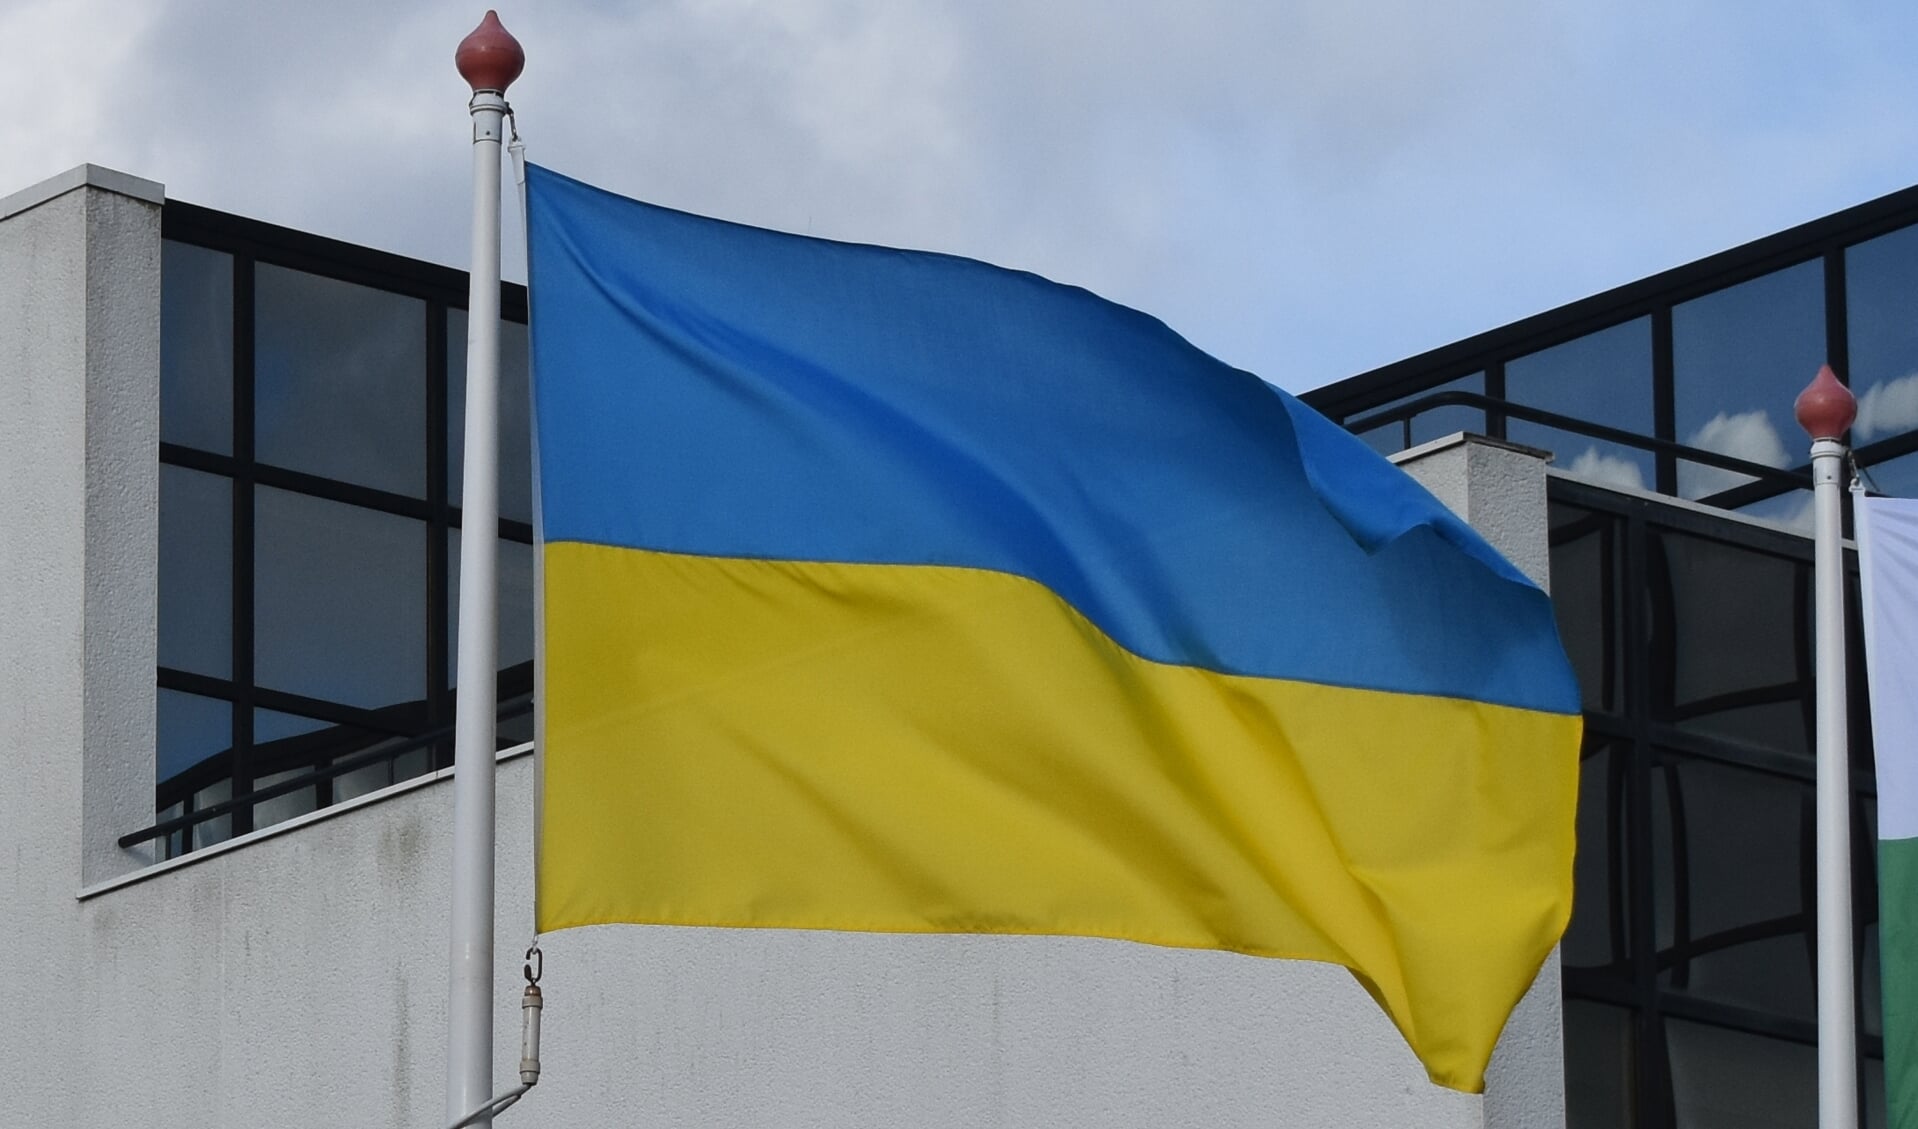 Bij diverse overheidsgebouwen wappert de Oekraïnse vlag, zoals hier in Drachten (Smallingerland). De gemeenten pogen ook echt hulp te geven aan vluchtelingen, zoals in Dokkum en Burgum.